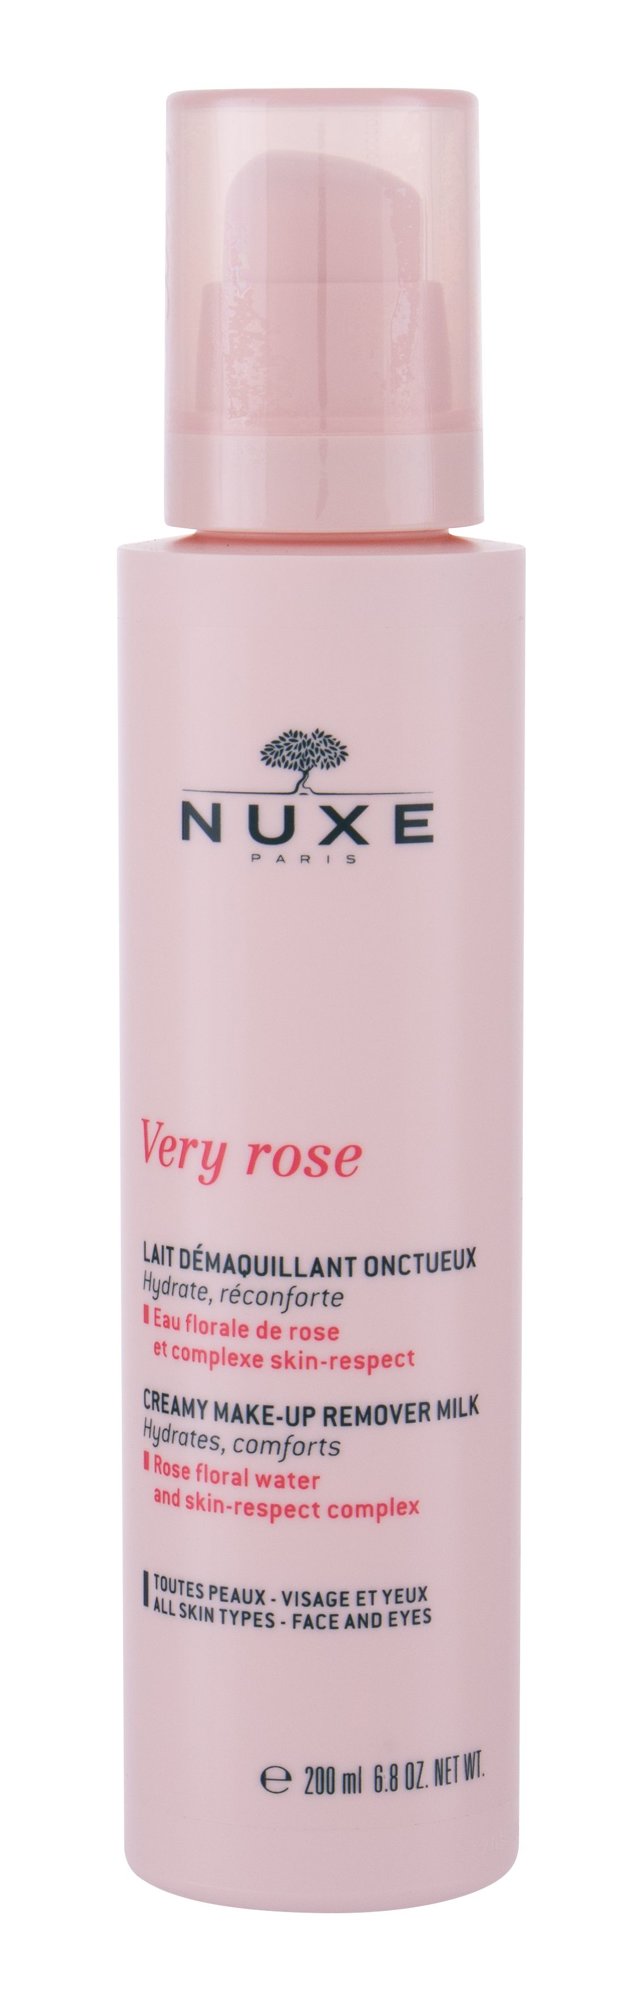 Nuxe Very Rose 200ml veido valiklis